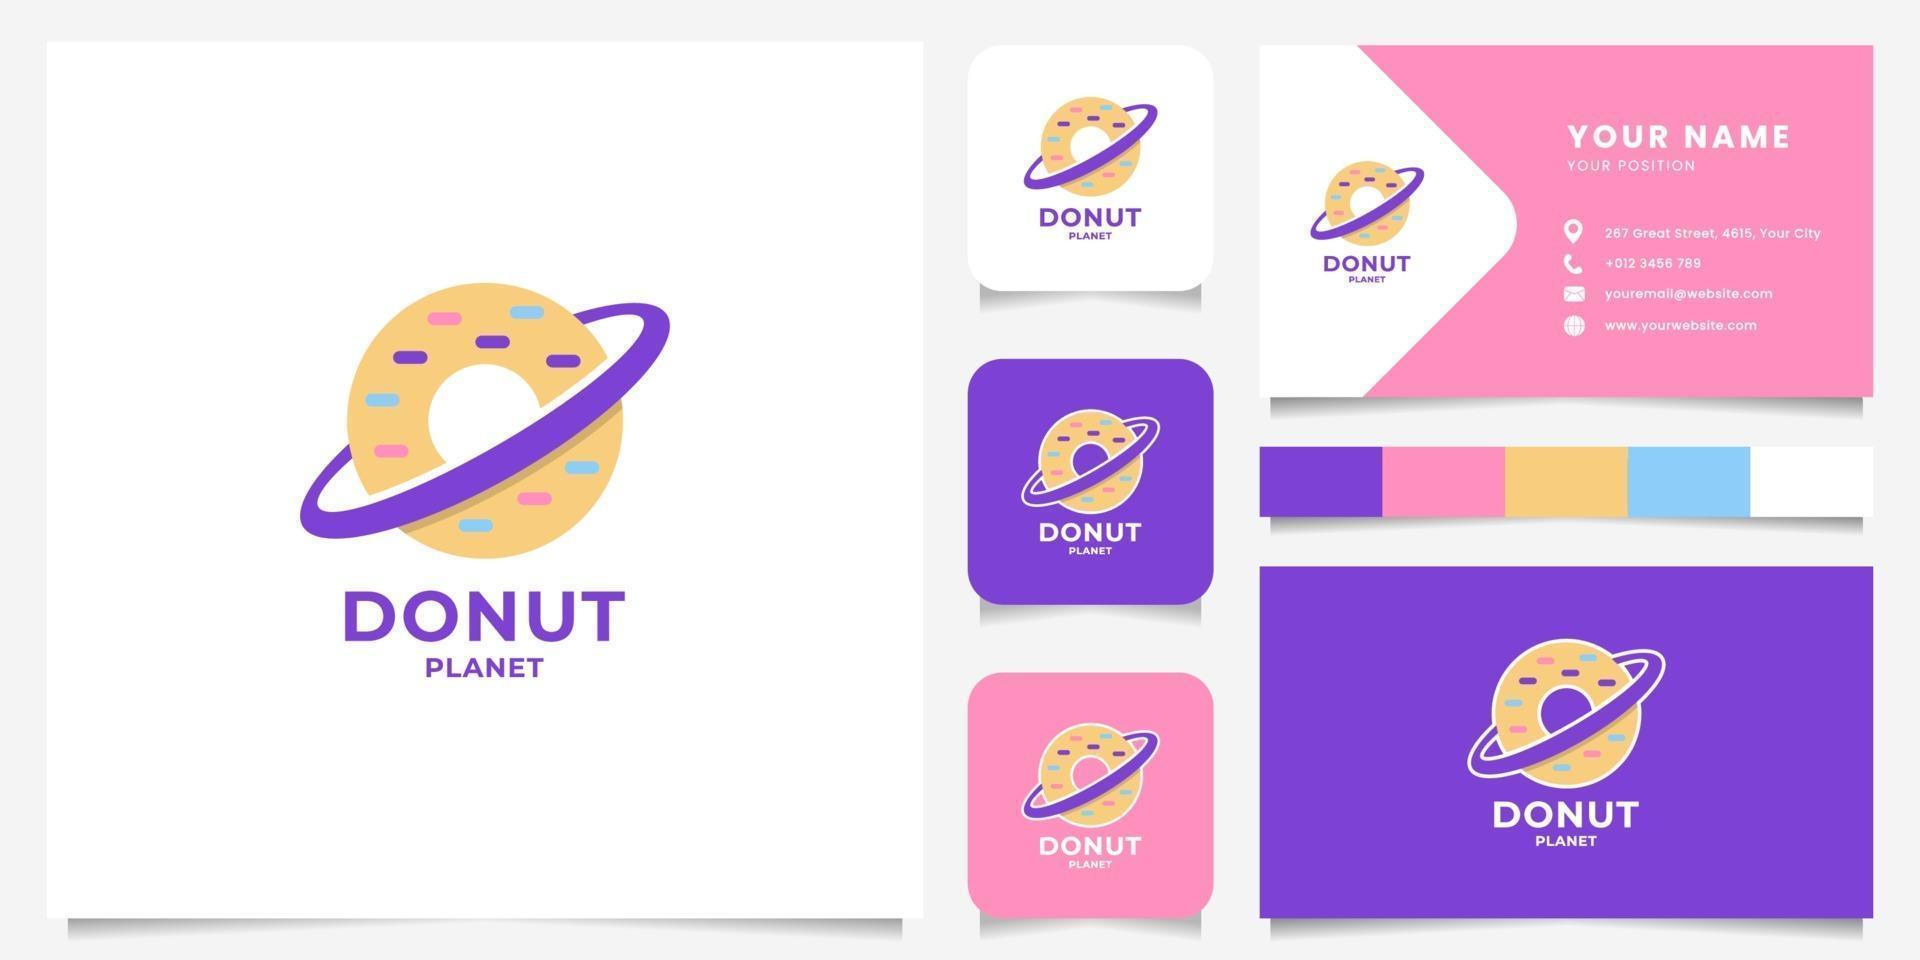 kleurrijke donut planeet logo met sjabloon voor visitekaartjes vector